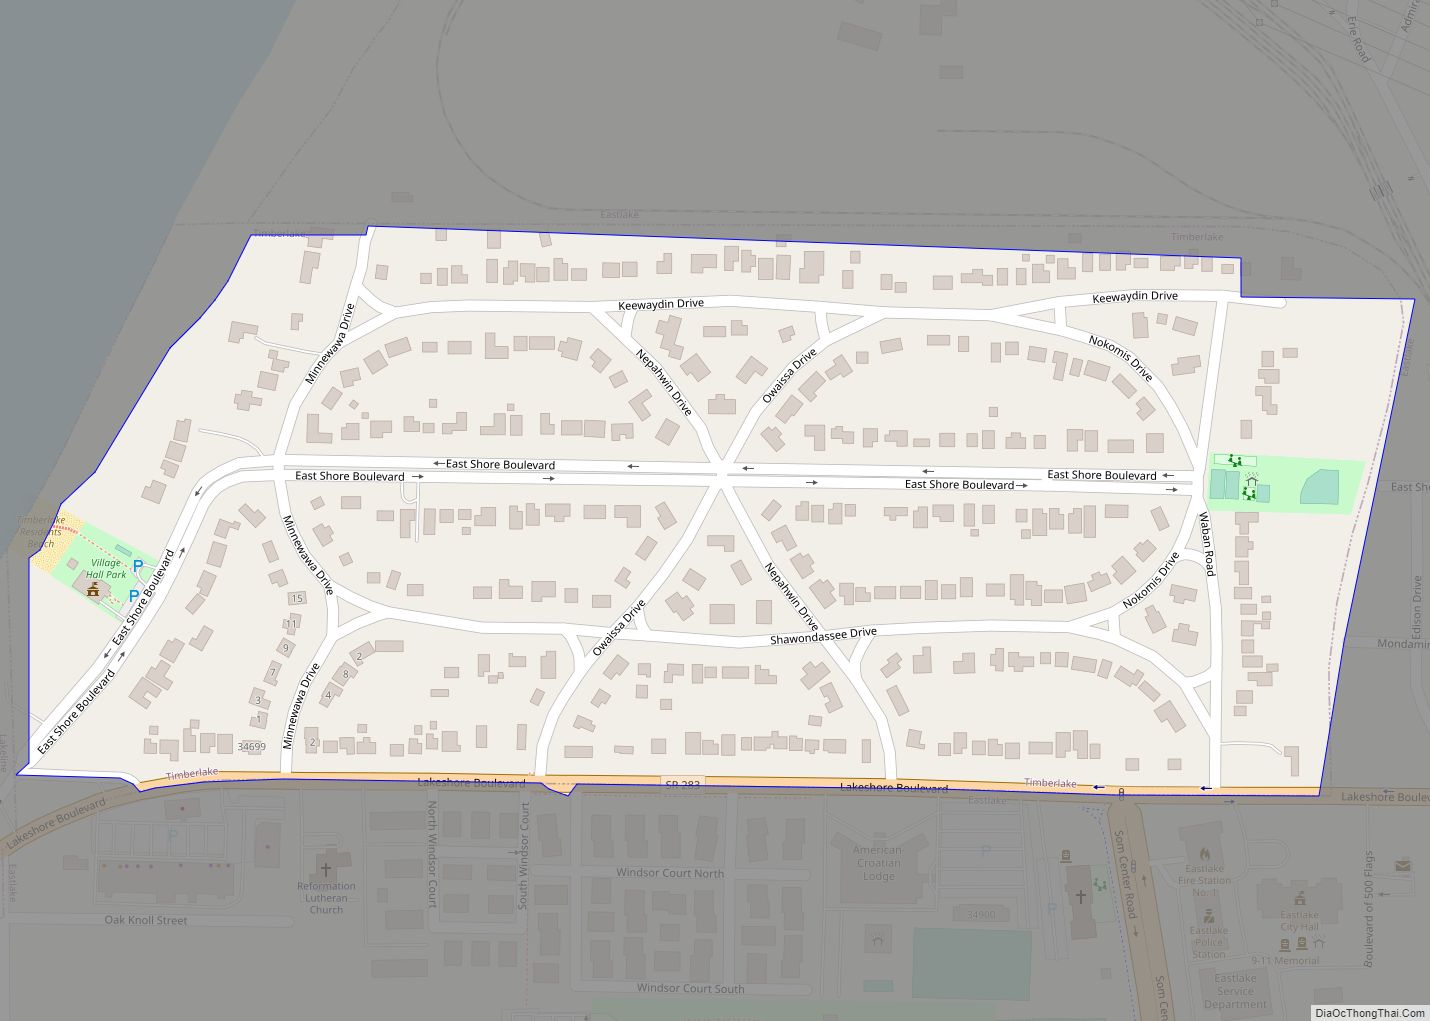 Map of Timberlake village